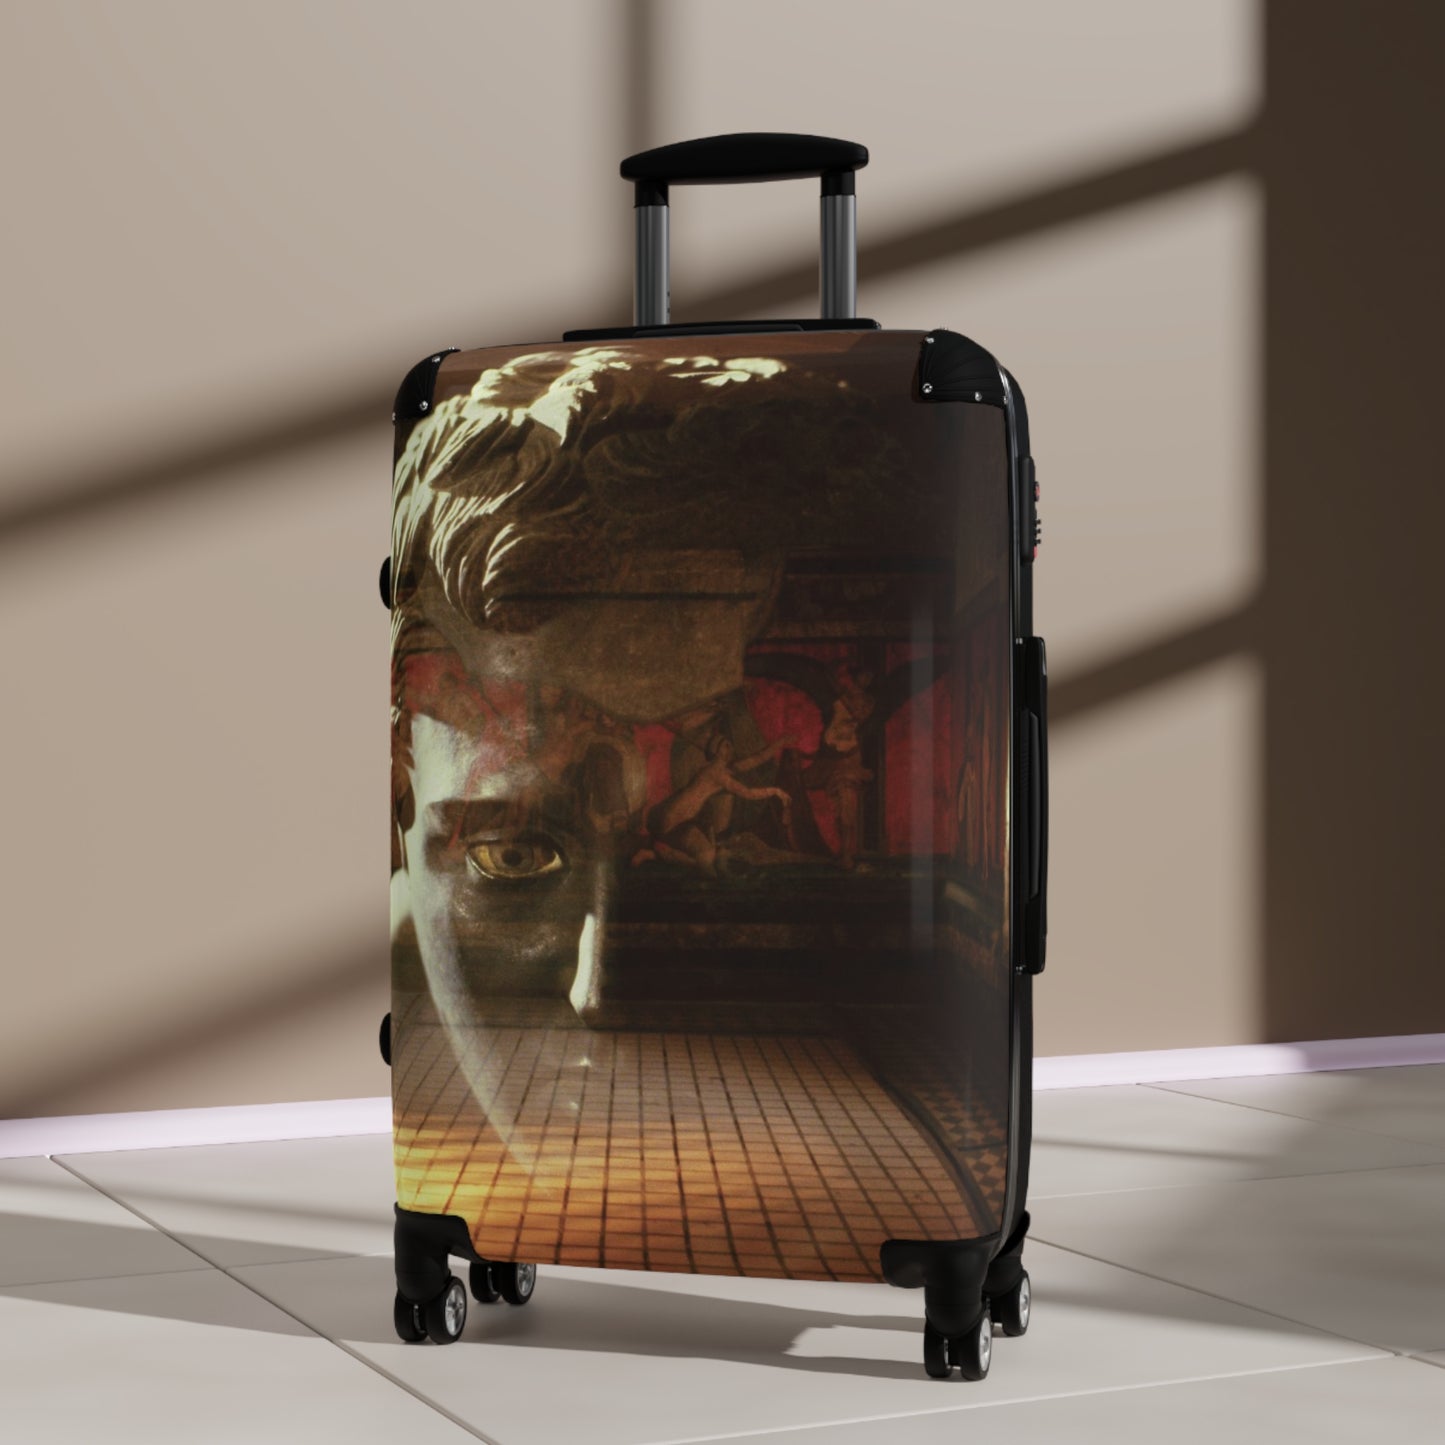 The Villa Dei Mysteries Luggage